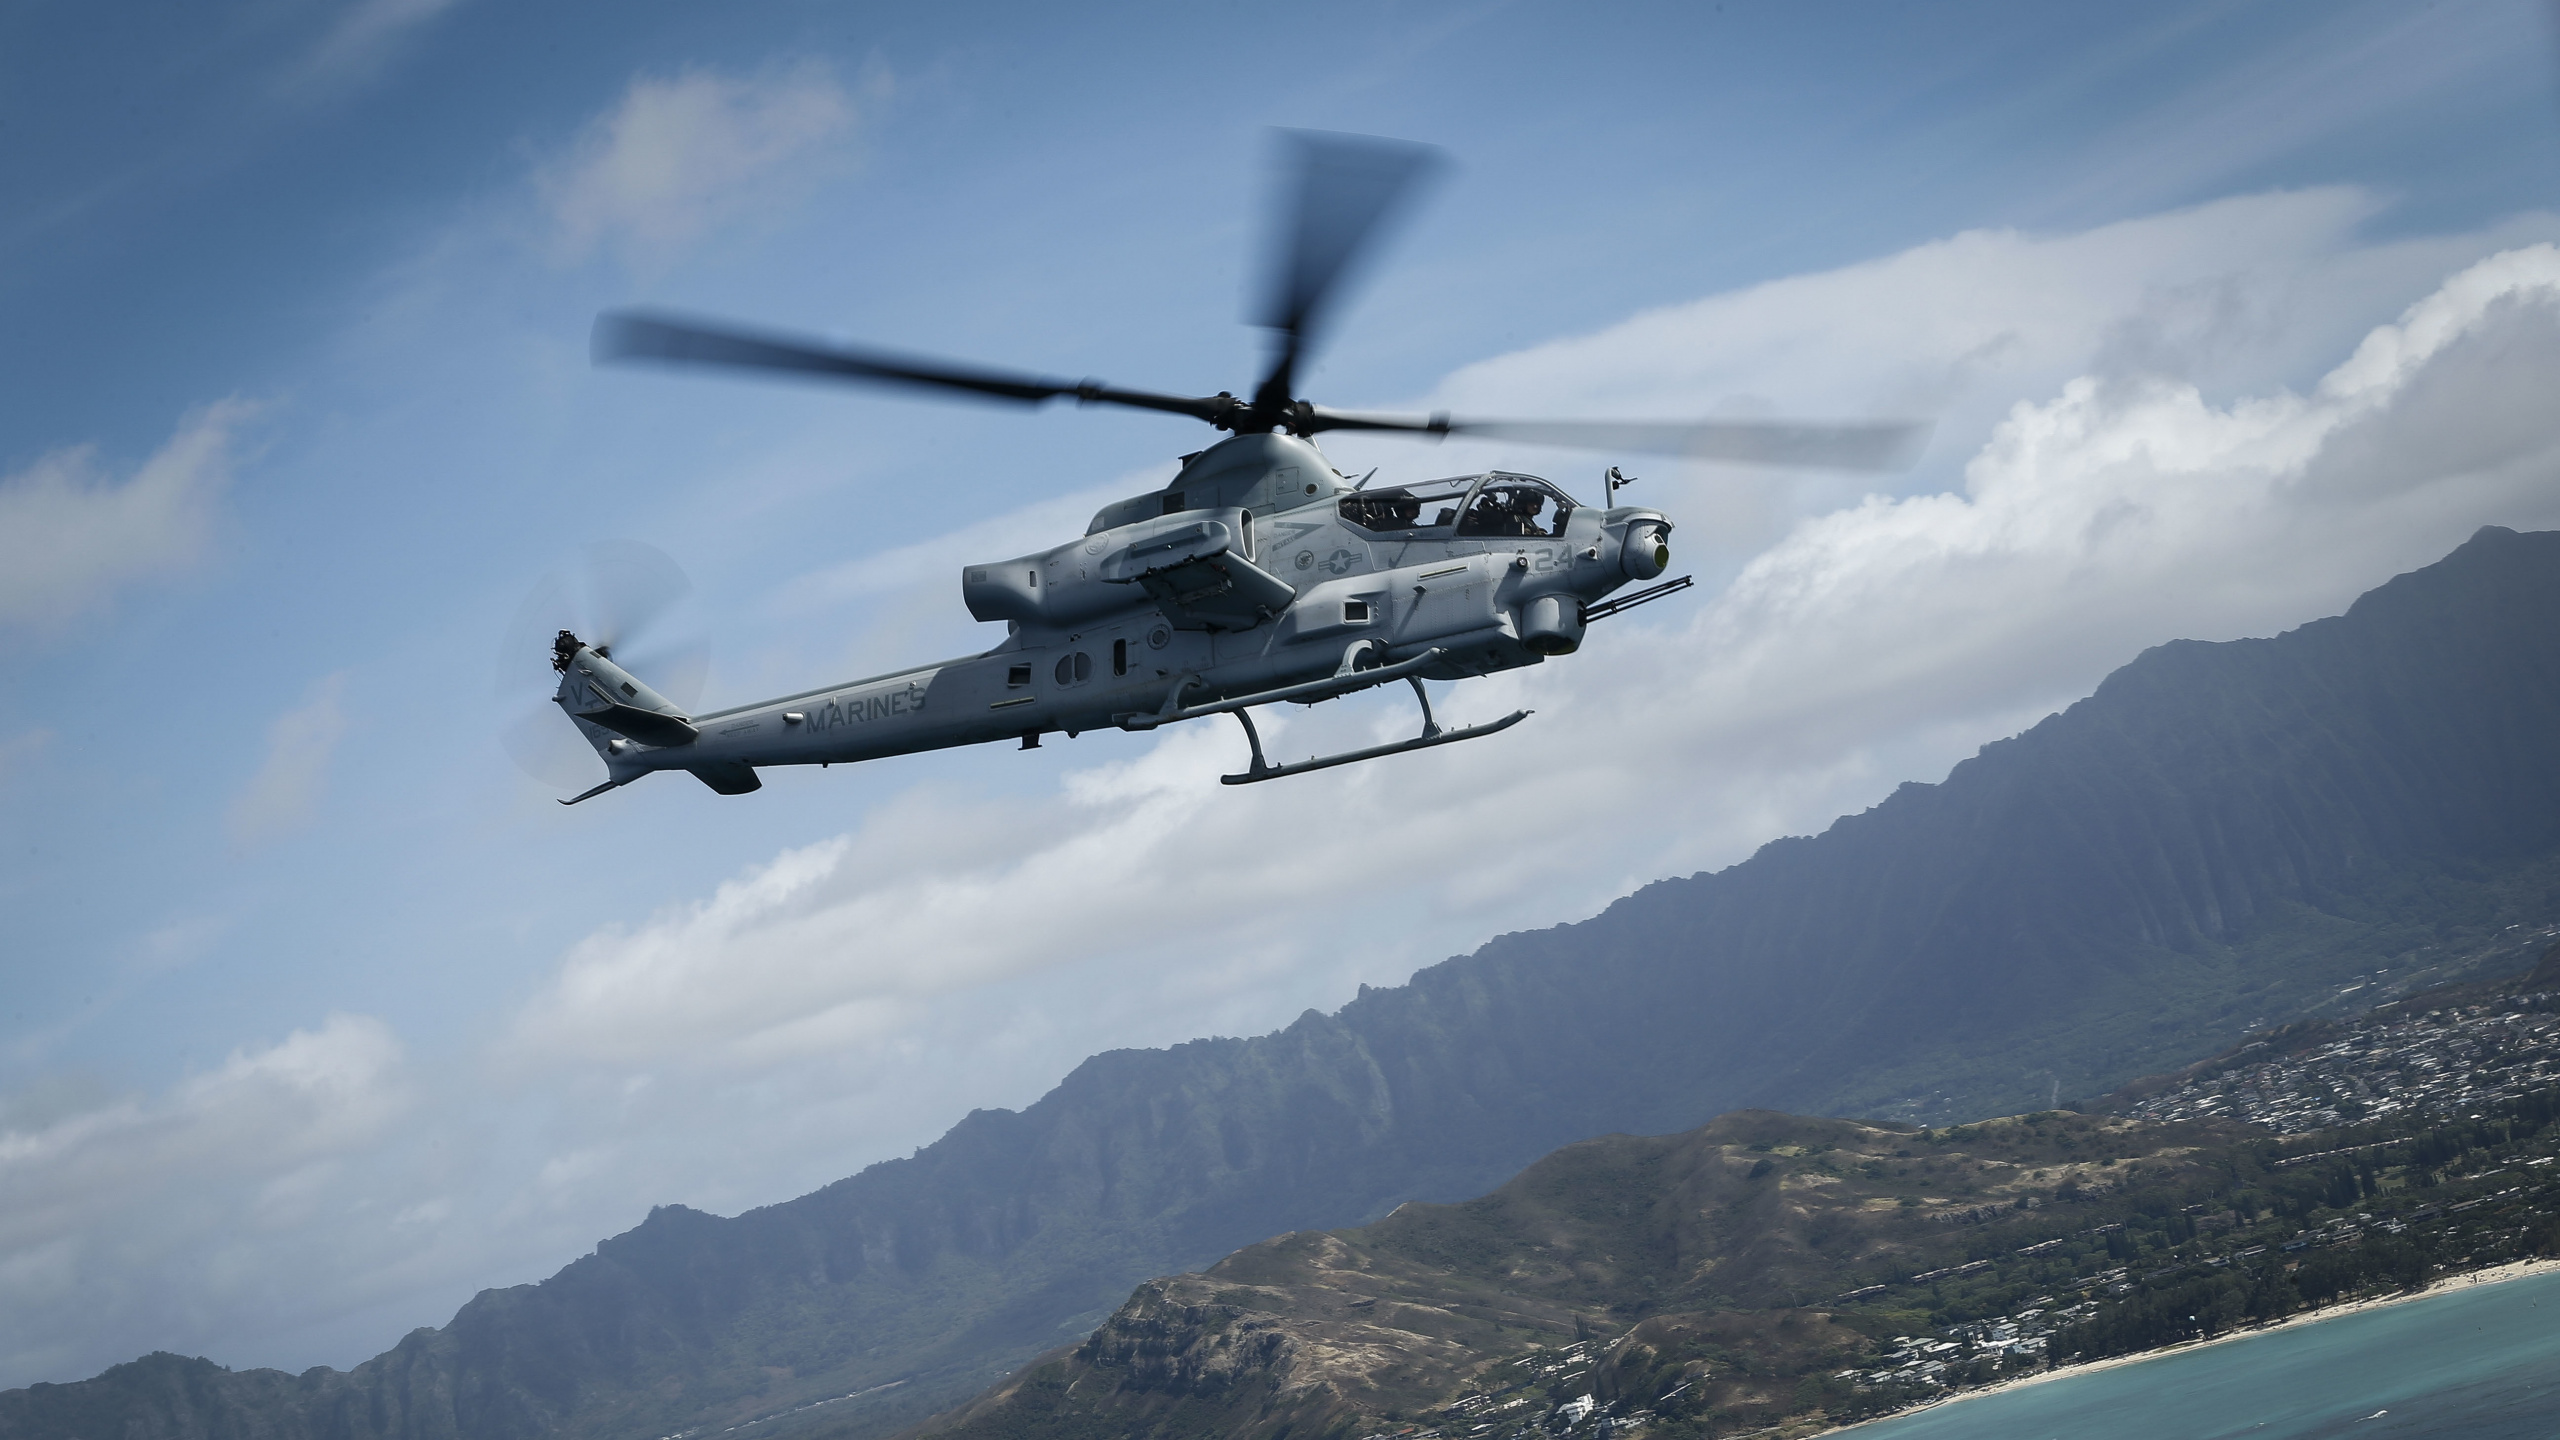 直升机, 攻击直升机, 美国海军陆战队, 直升机转子的, 旋翼飞机 壁纸 2560x1440 允许